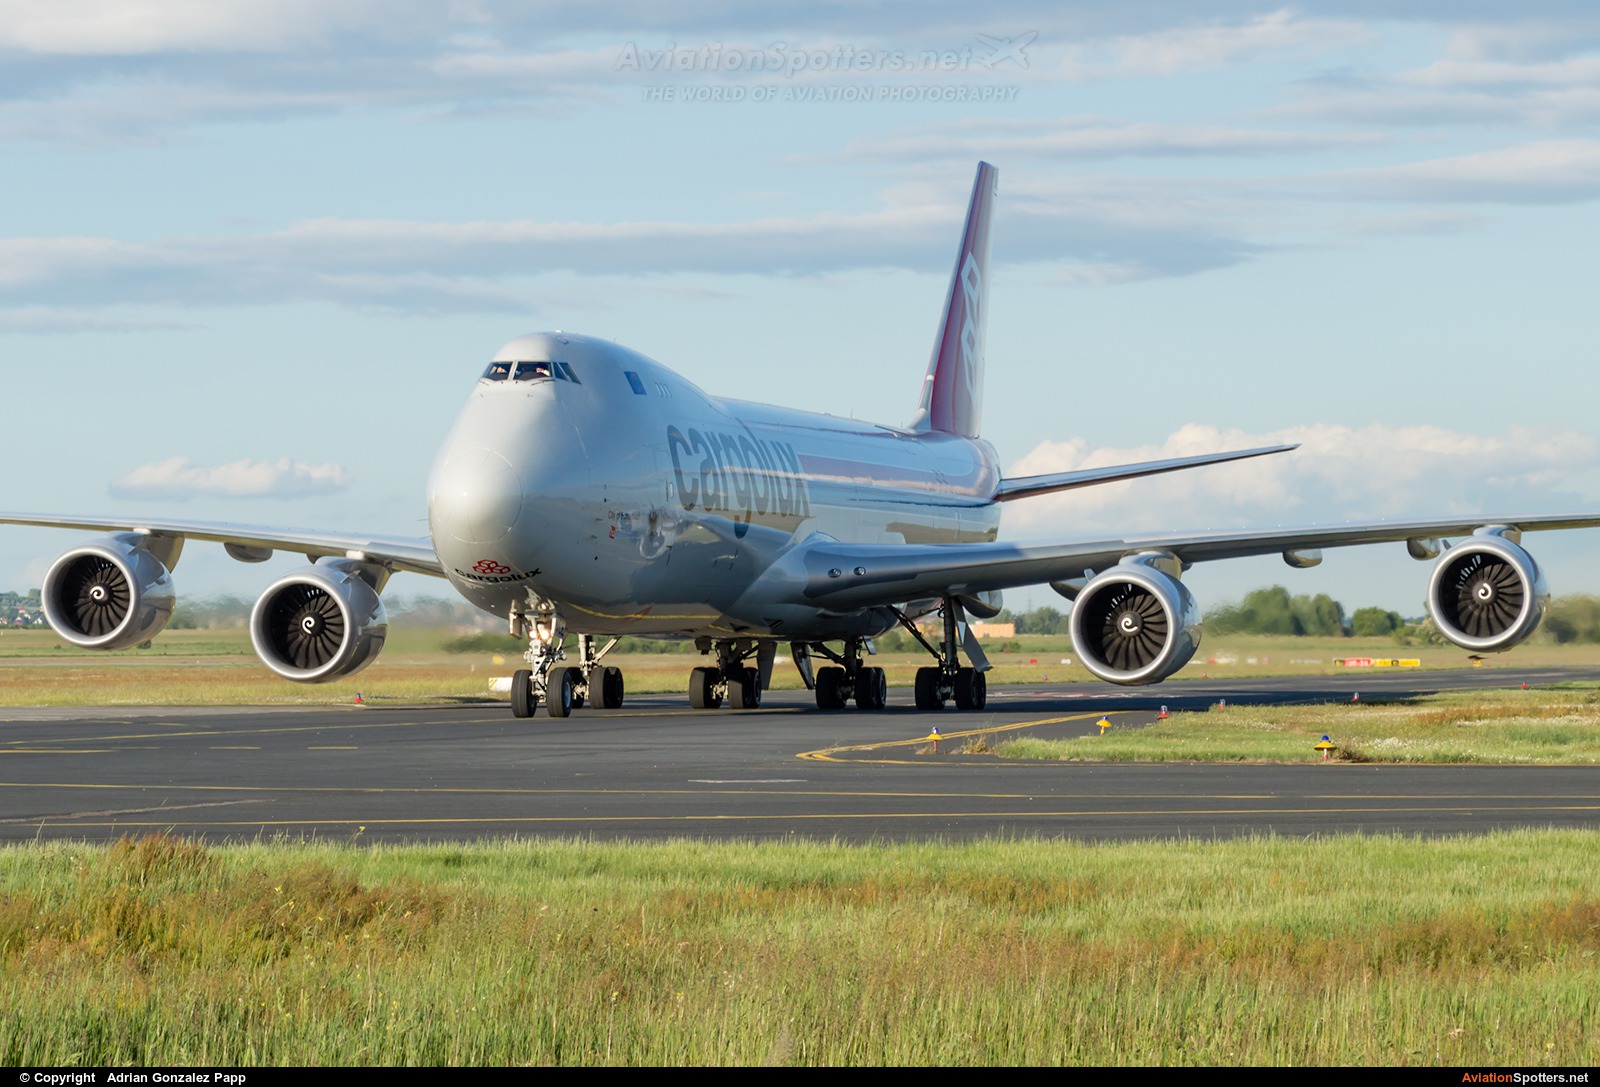 Cargolux  -  747-8F  (LX-VCE) By Adrian Gonzalez Papp (agp12)